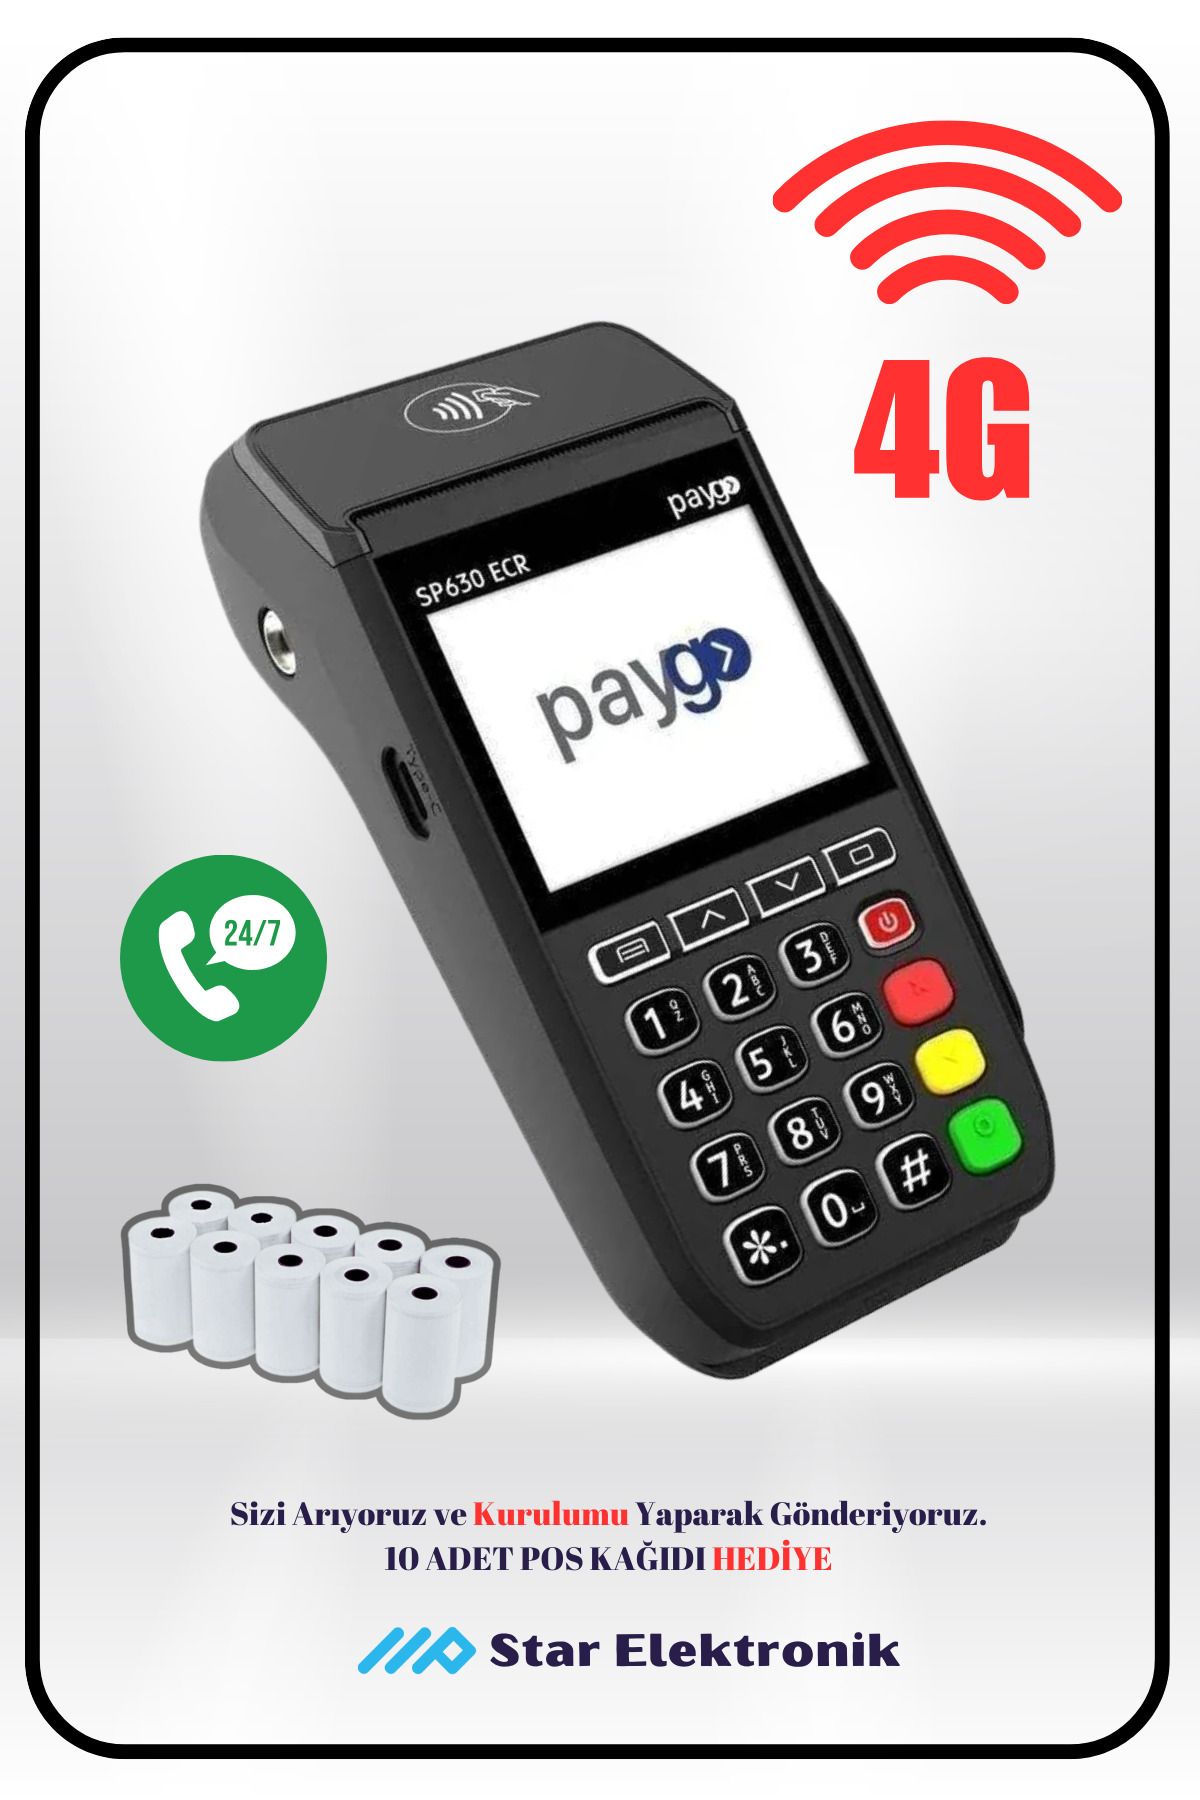 paygo Sp630 "4g Pro Yeni Model" Mobil Yazarkasapos (ÜCRETSİZ KURULUM-SİM VE DESTEK)